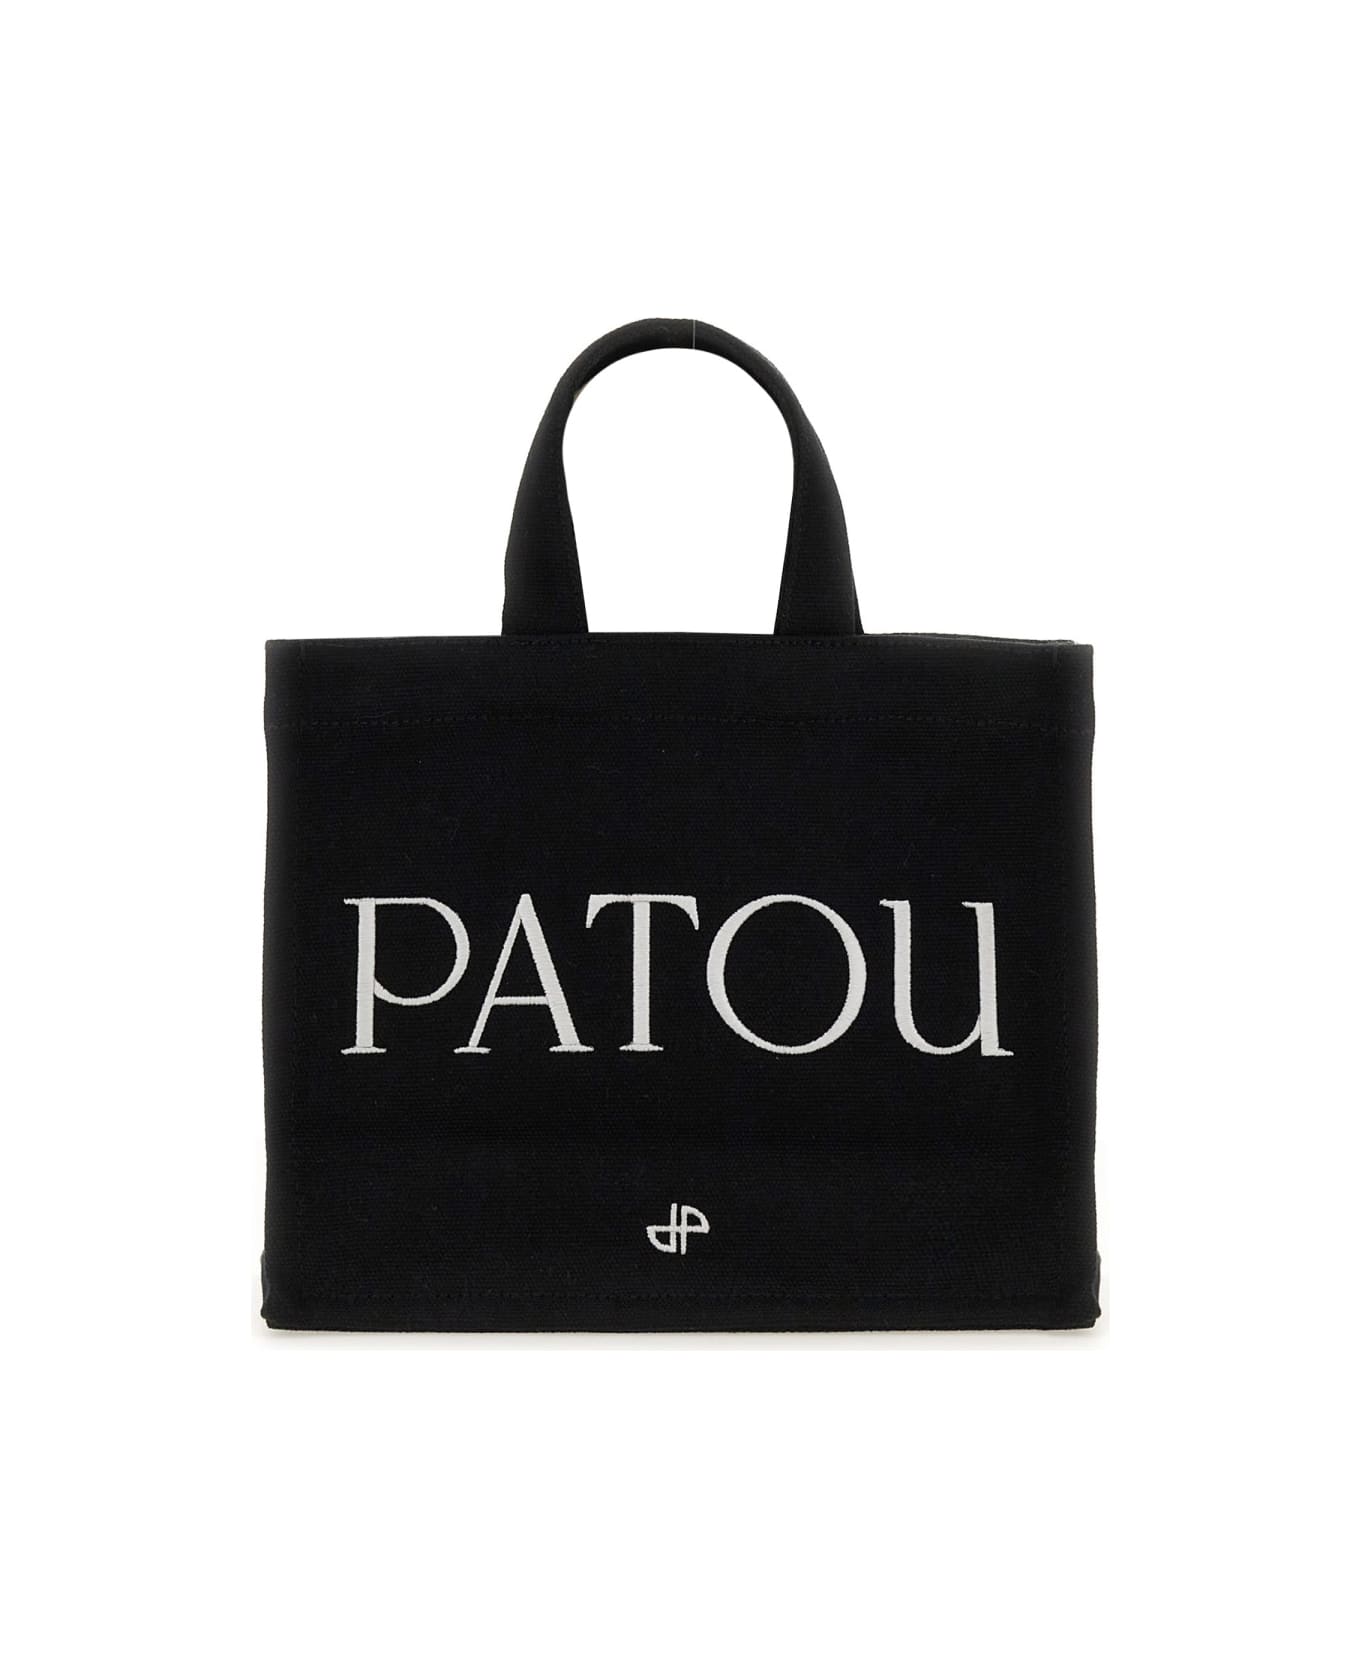 Patou Small 'patou' Tote Bag - BLACK トートバッグ